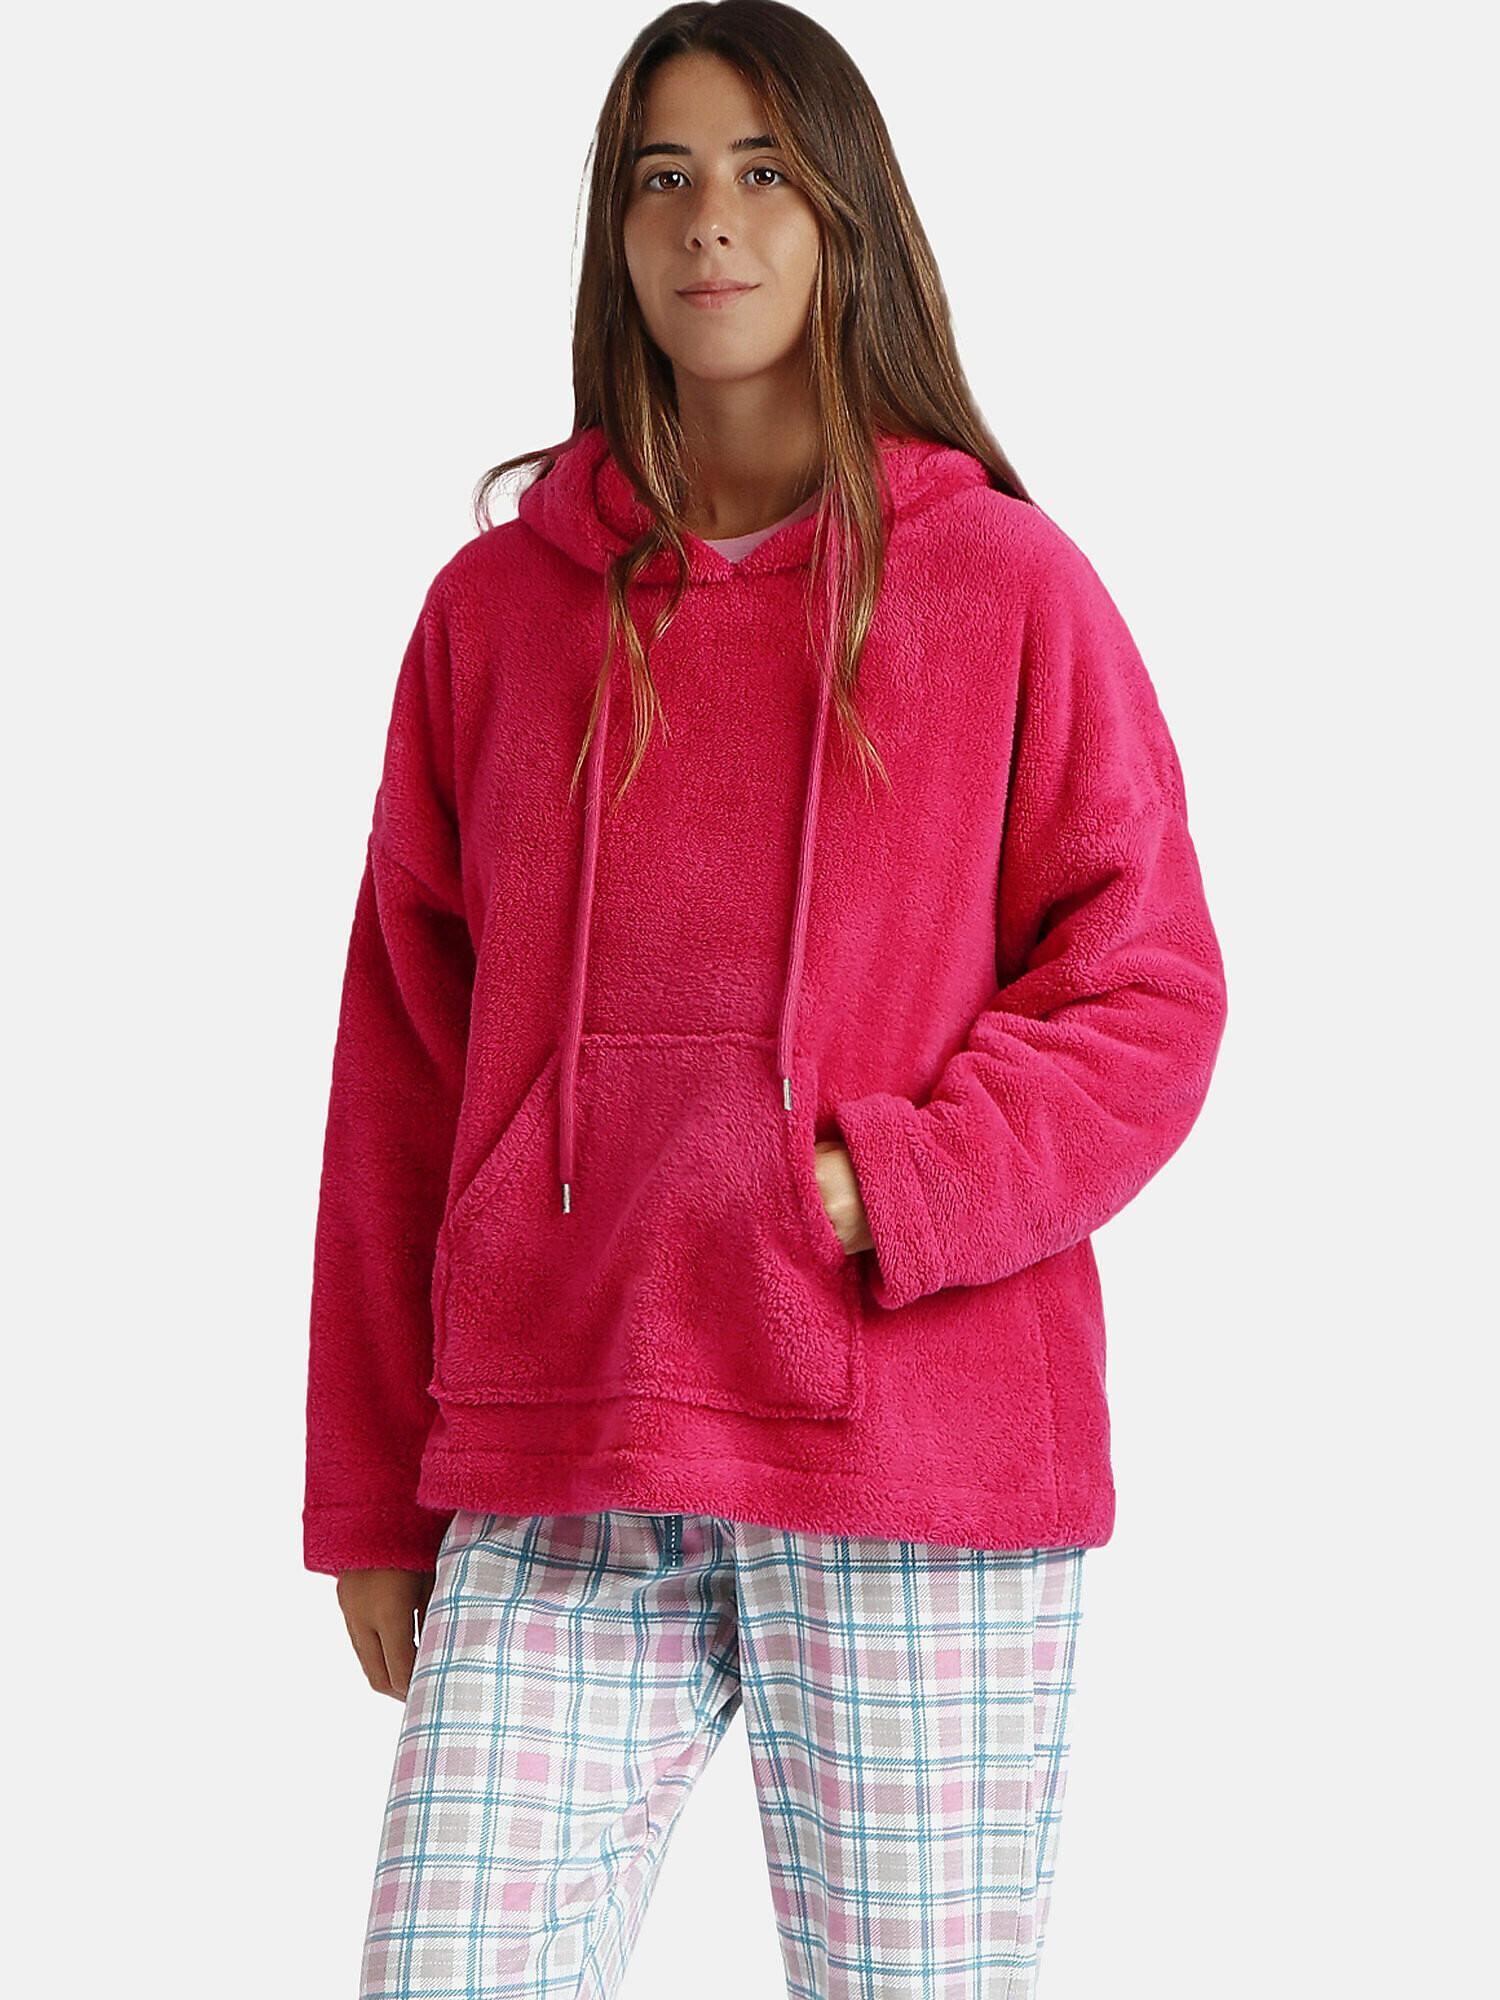 Kapuzen-sweatshirt Basica Damen Rot Bunt M von Admas